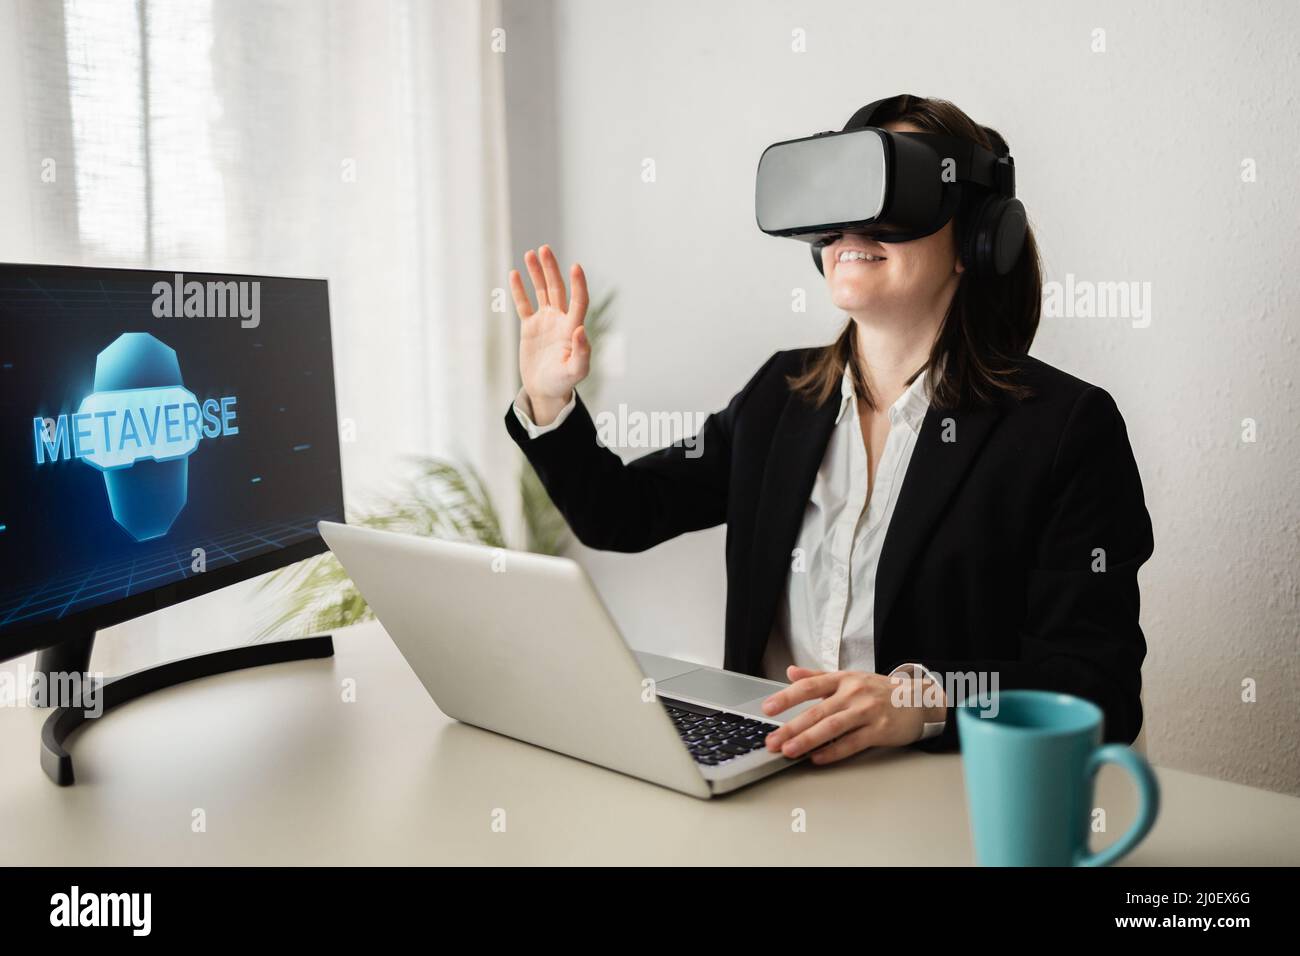 Concept de technologie métaverse - Business Woman faisant appel vidéo portant un casque de réalité virtuelle - Focus sur les lunettes Banque D'Images